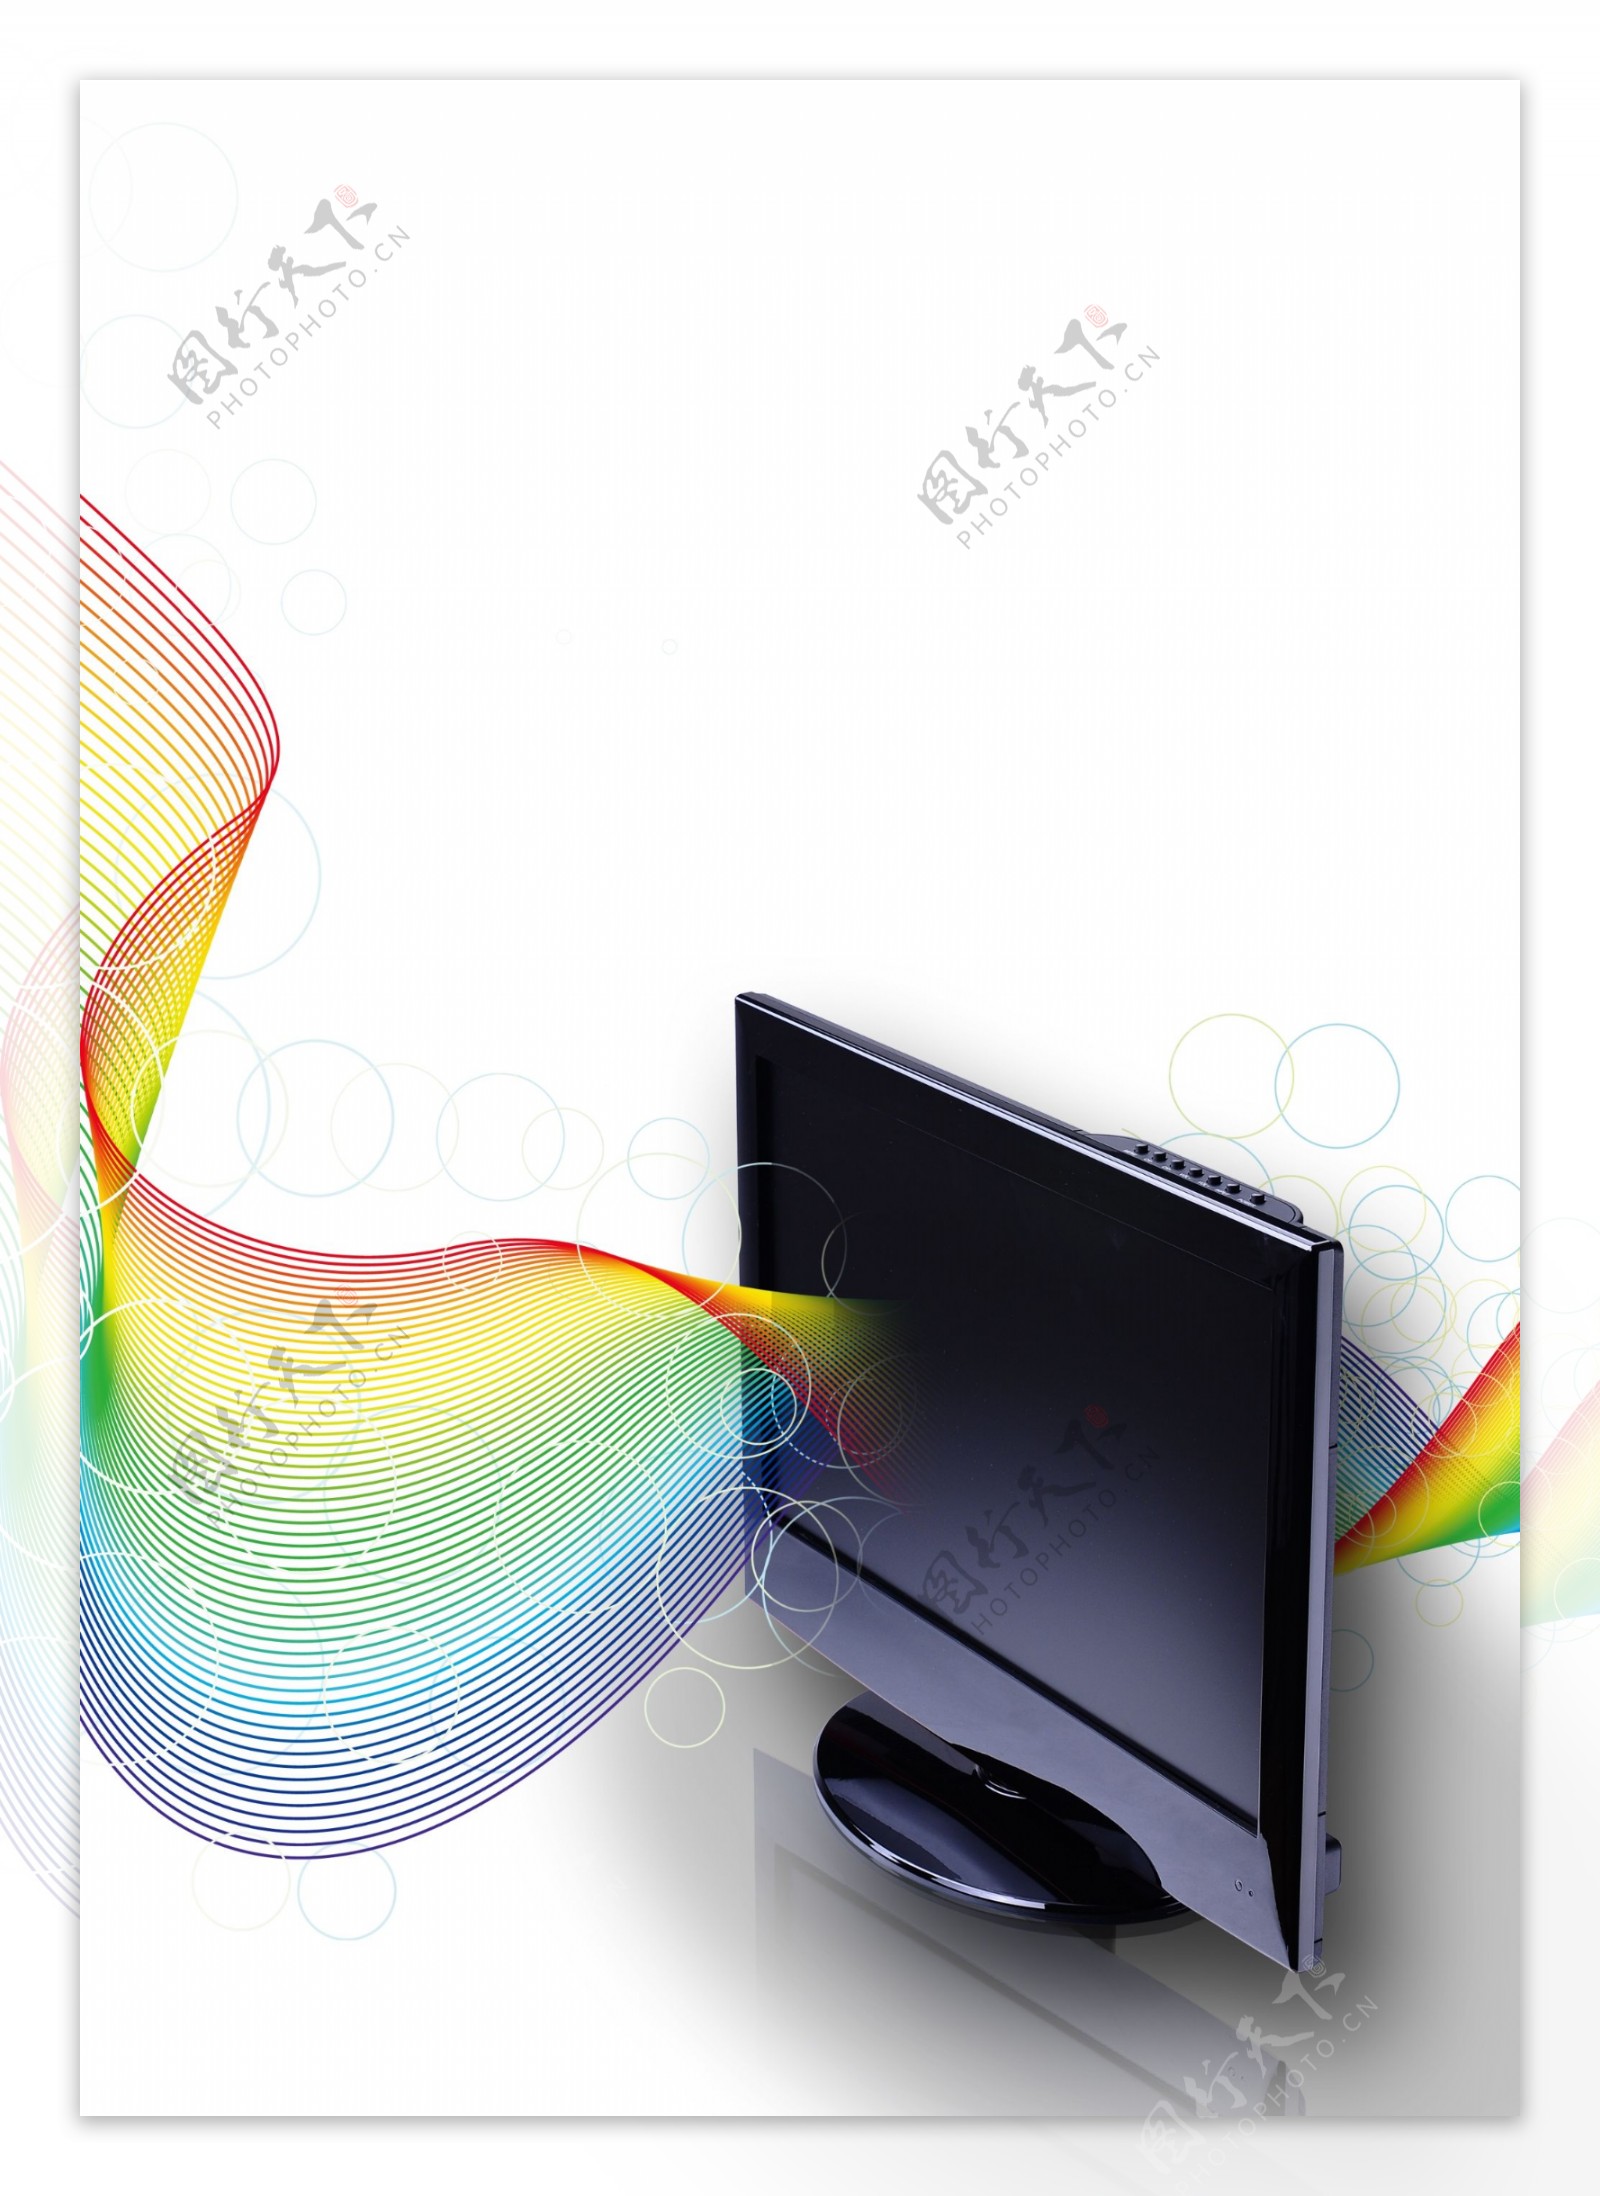 液晶电视封面设计图片